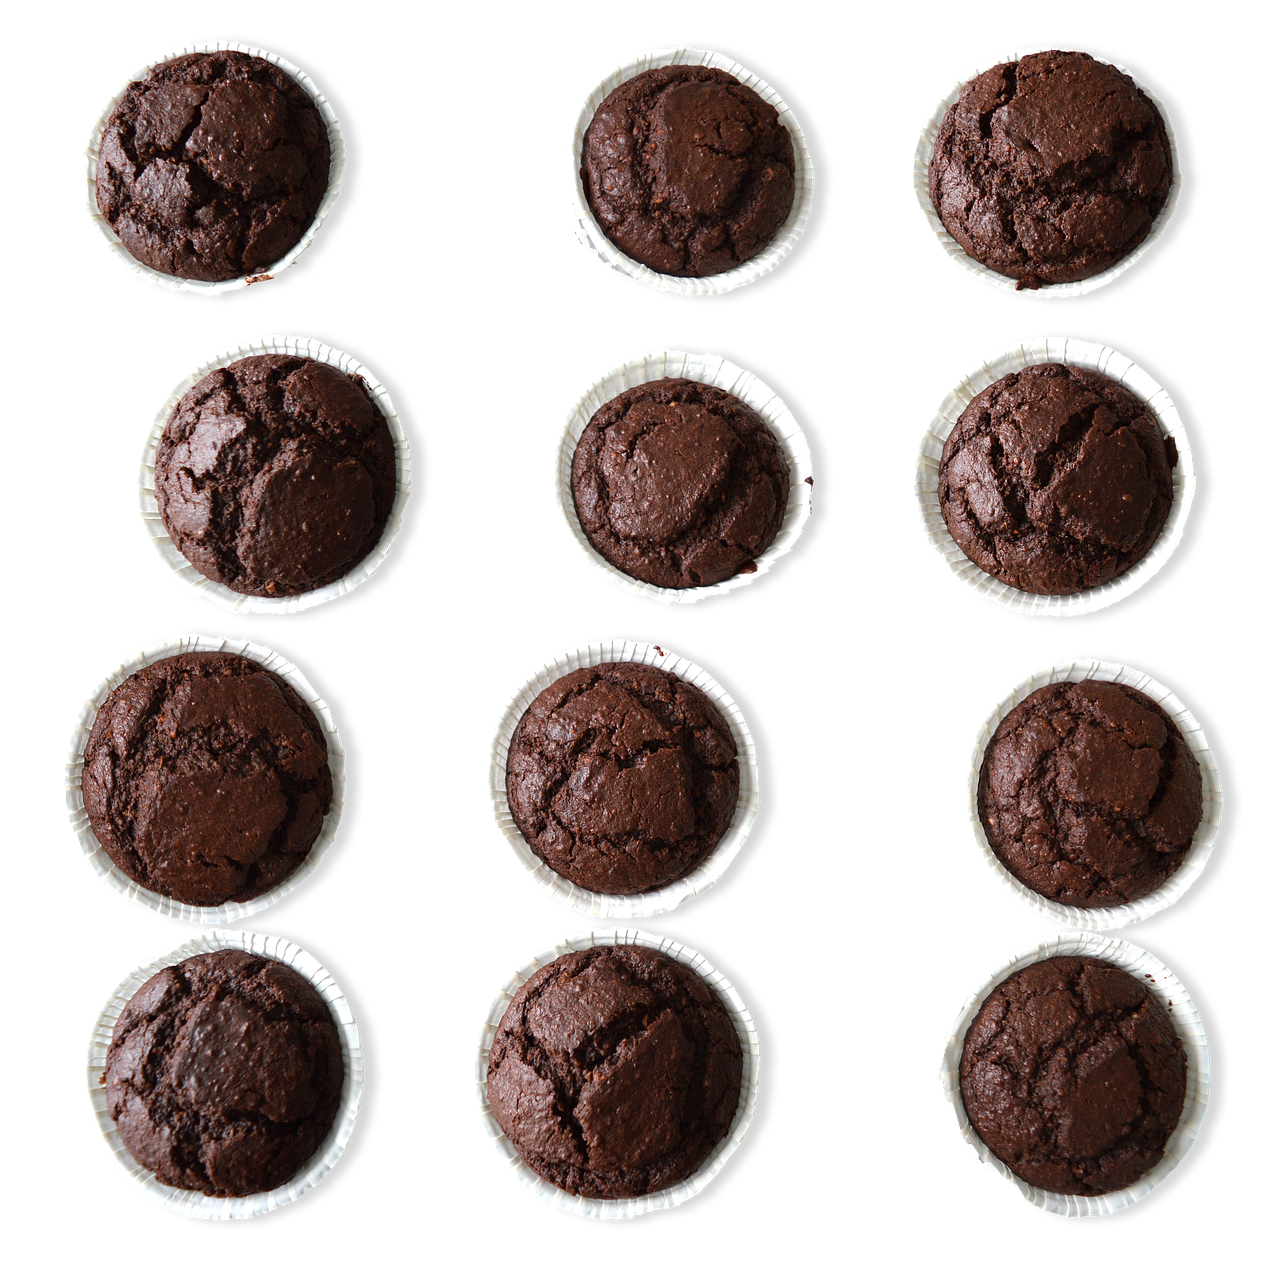 Triple Chocolate Brownies